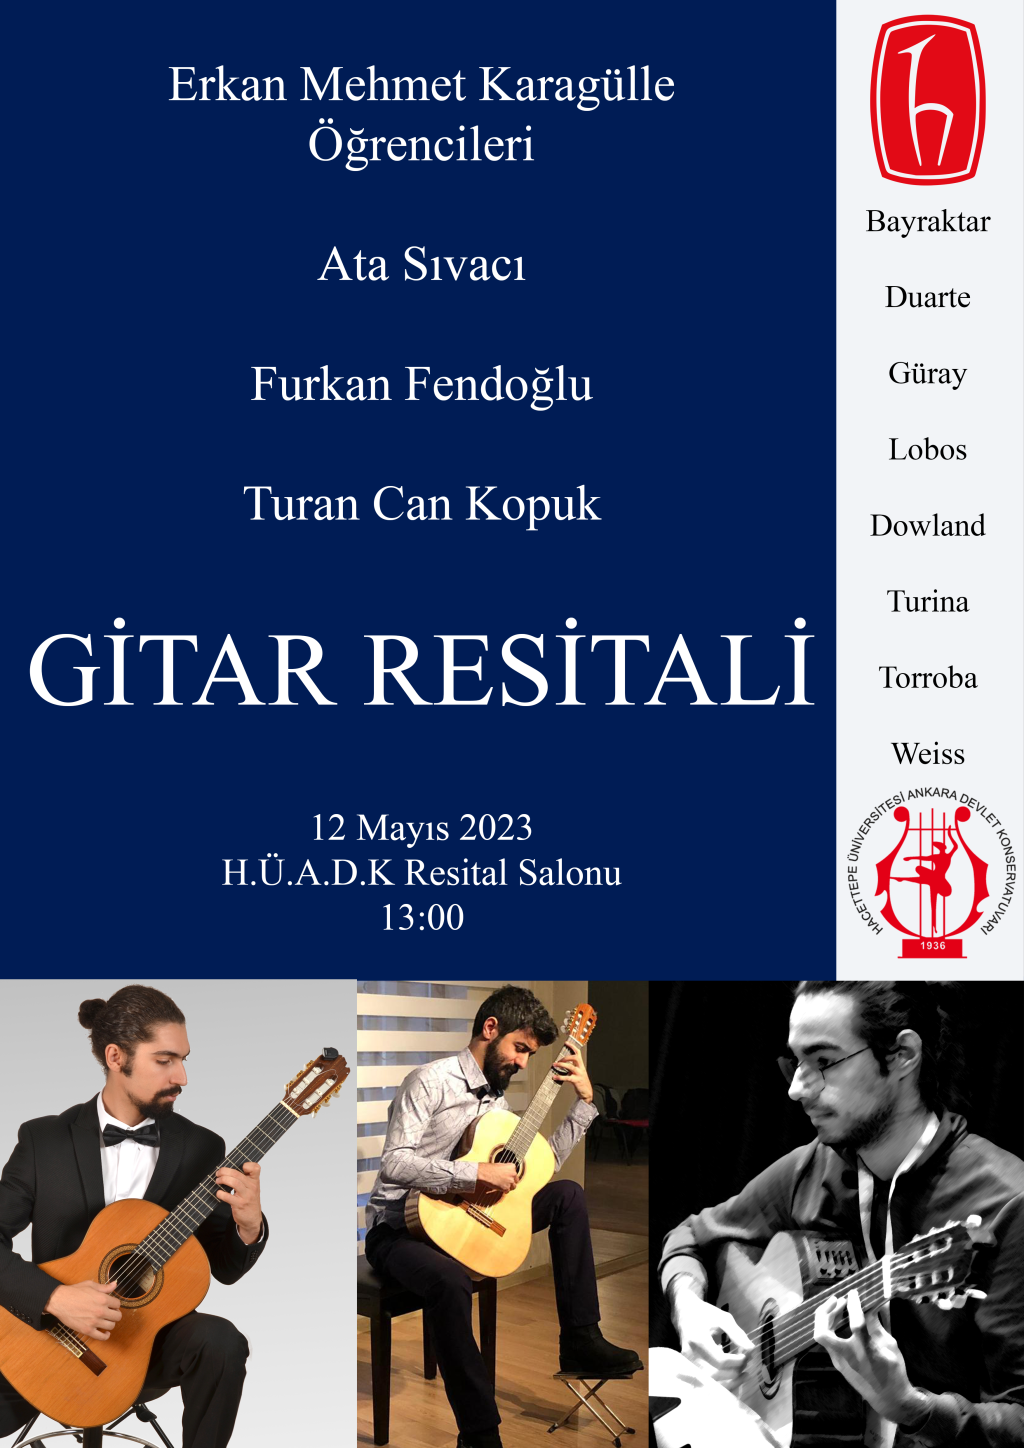 12 Mayıs 2023, Erkan Mehmet Karagülle Öğrencileri Konseri